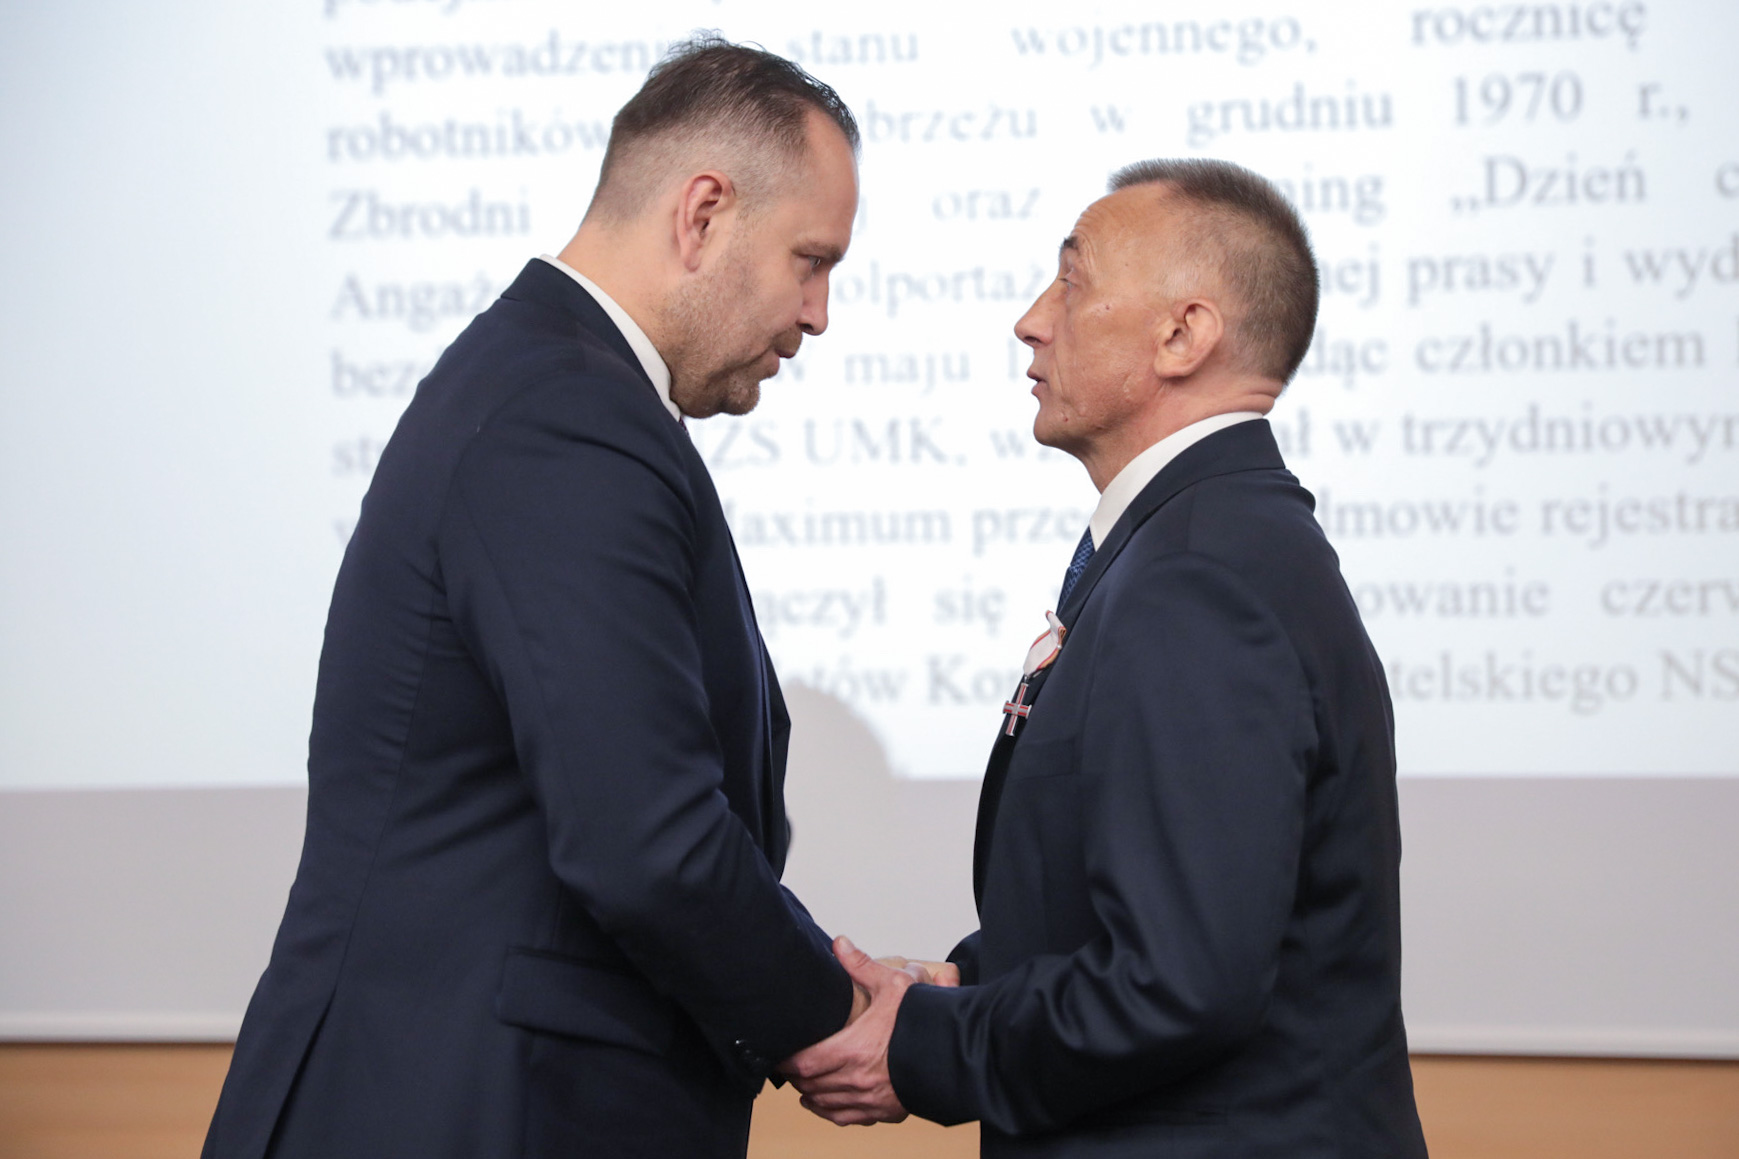 Prezes IPN dr Karol Nawrocki wręczył dawnym opozycjonistom Krzyże Wolności i Solidarności – Bydgoszcz, 3 września 2021. Fot. Mikołaj Bujak (IPN)